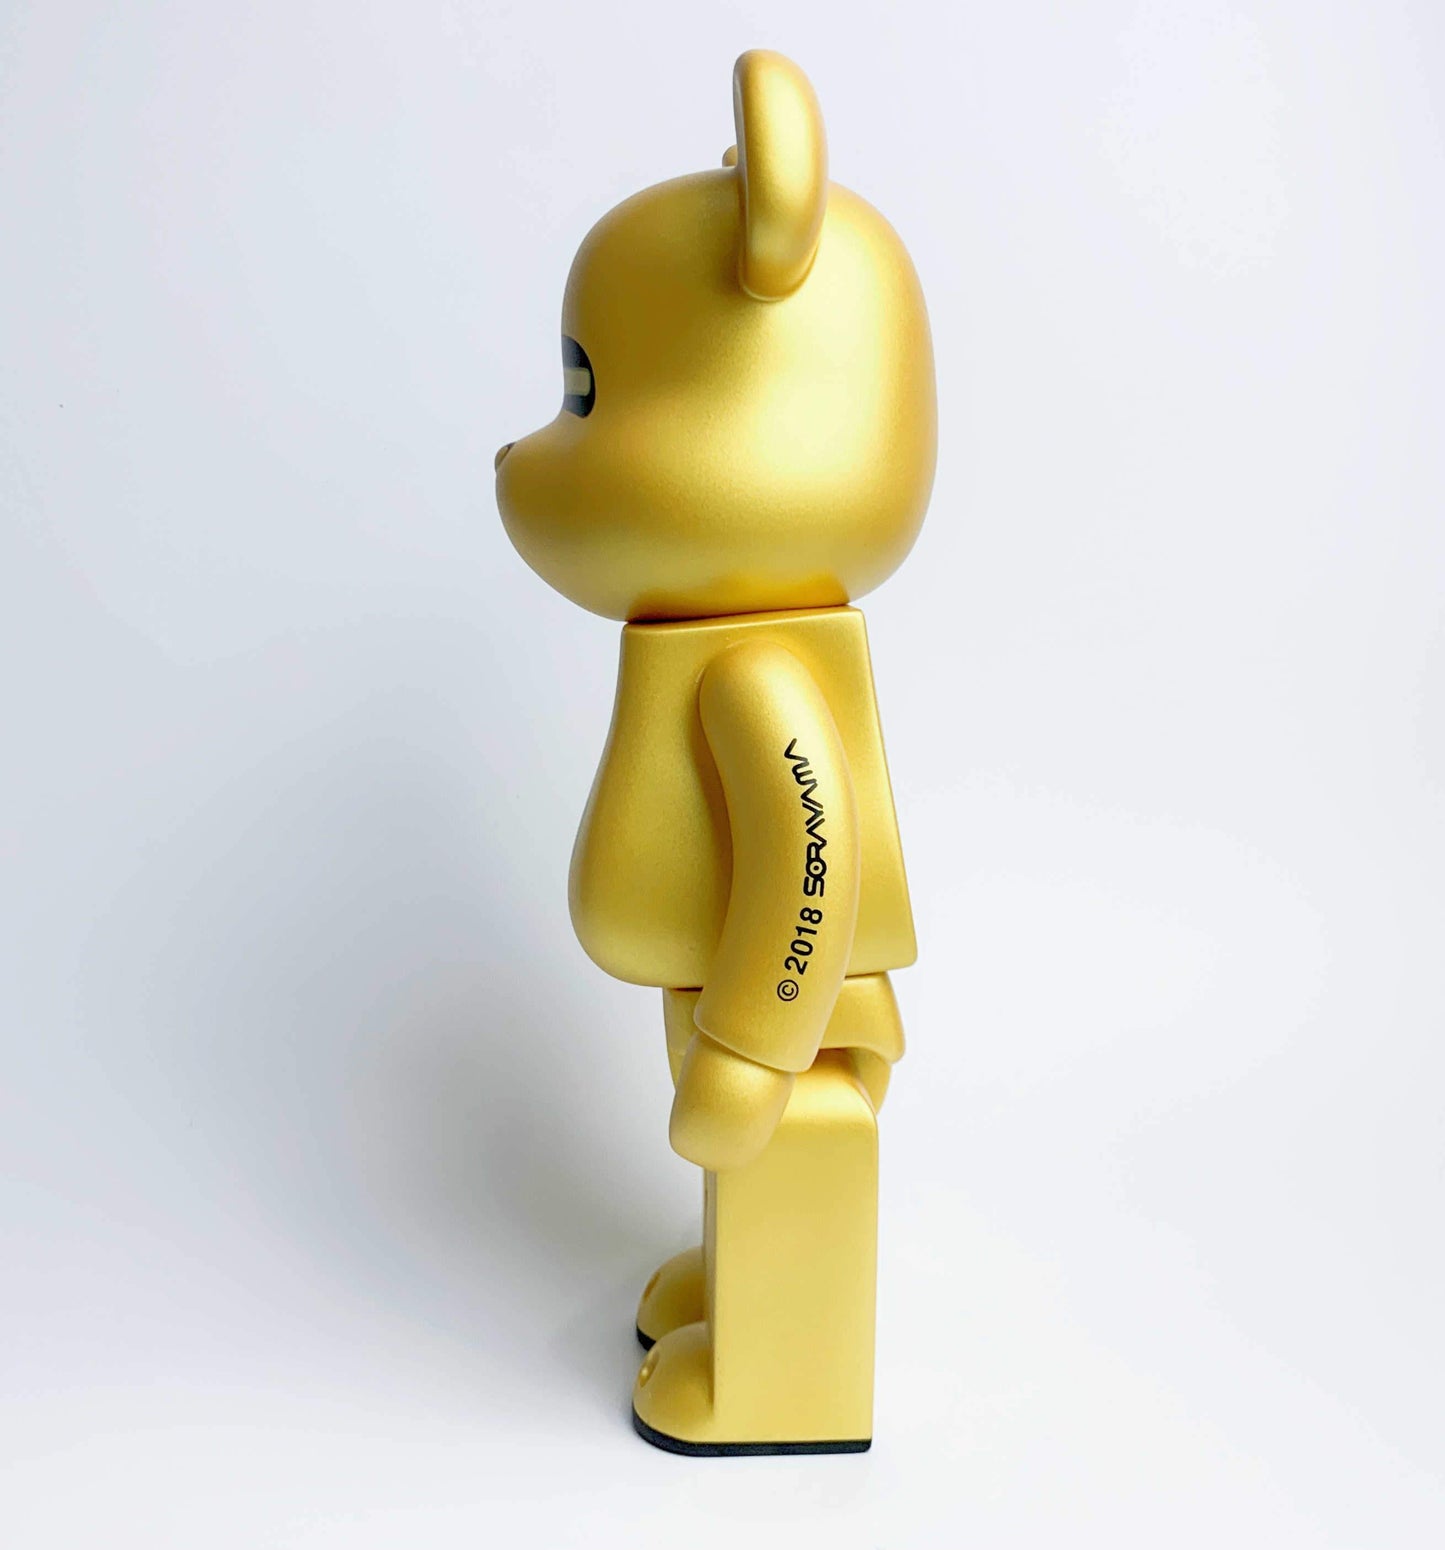 Hobby - 28cm BE@RBRICK 400% Sorayama Golden Action Figure Boxed